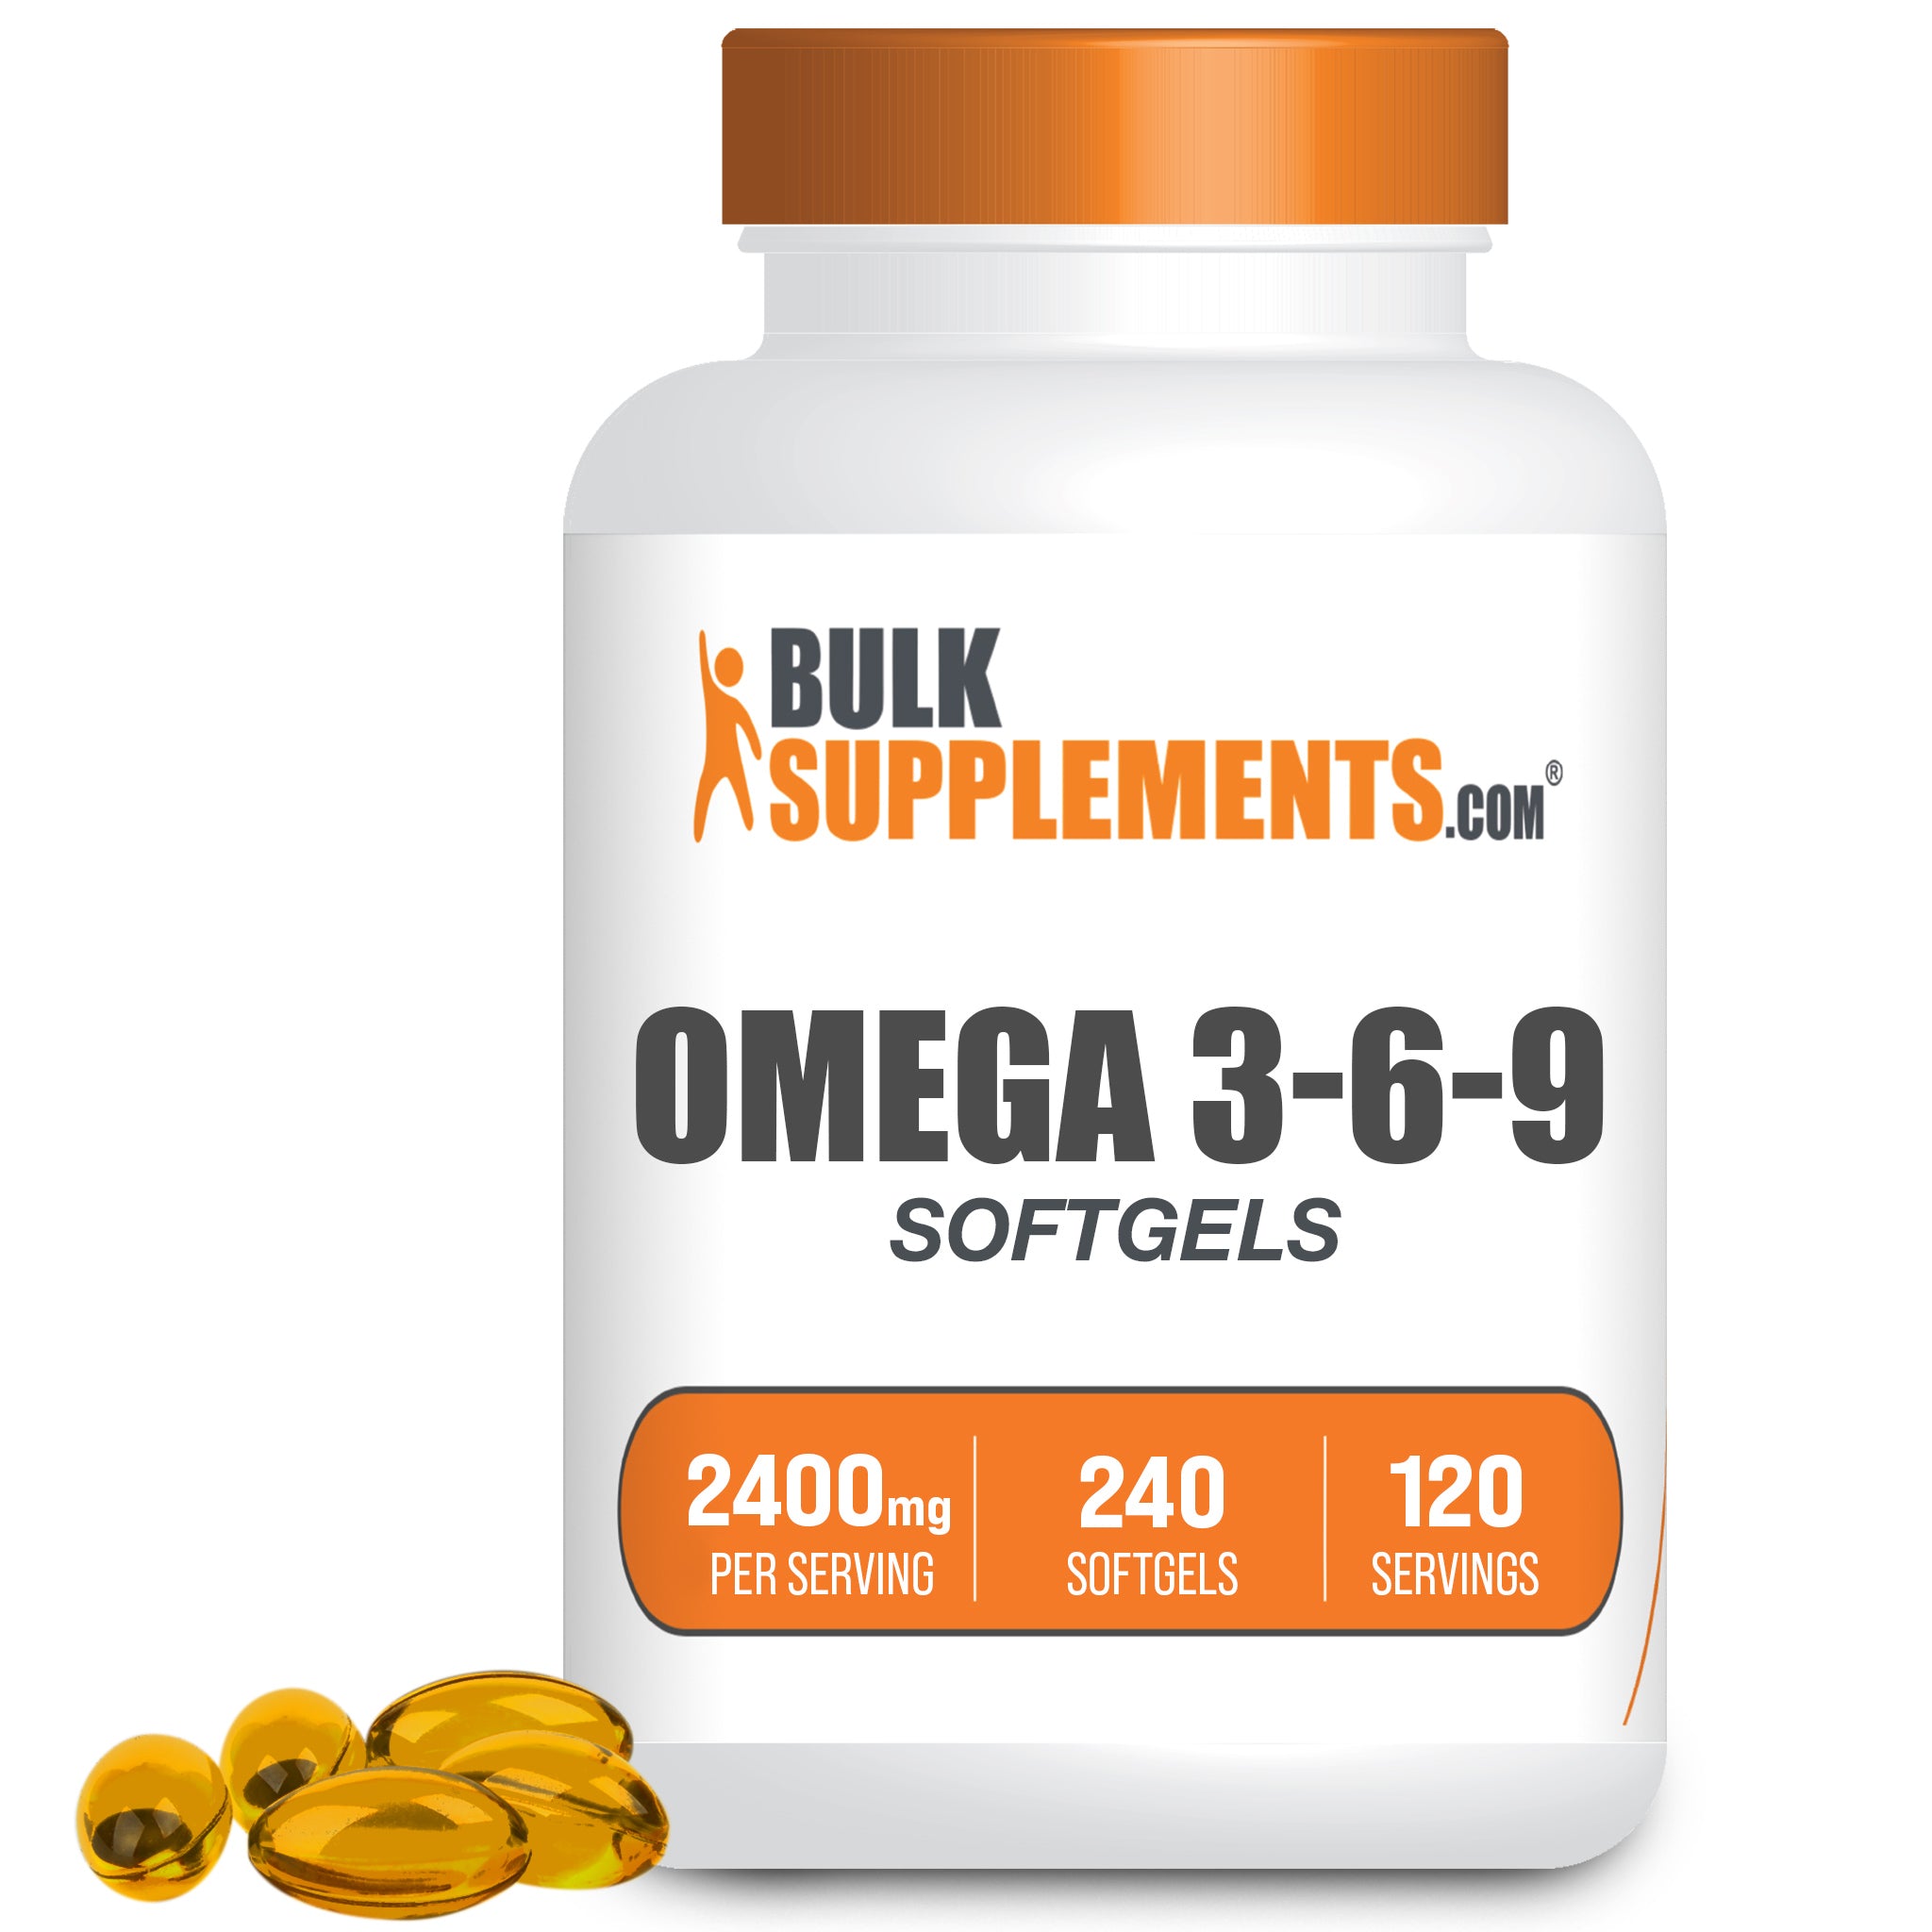 Tentakel geestelijke gezondheid Toevoeging Omega 3 6 9 Supplements (Softgels) | Fatty Acid Supplements